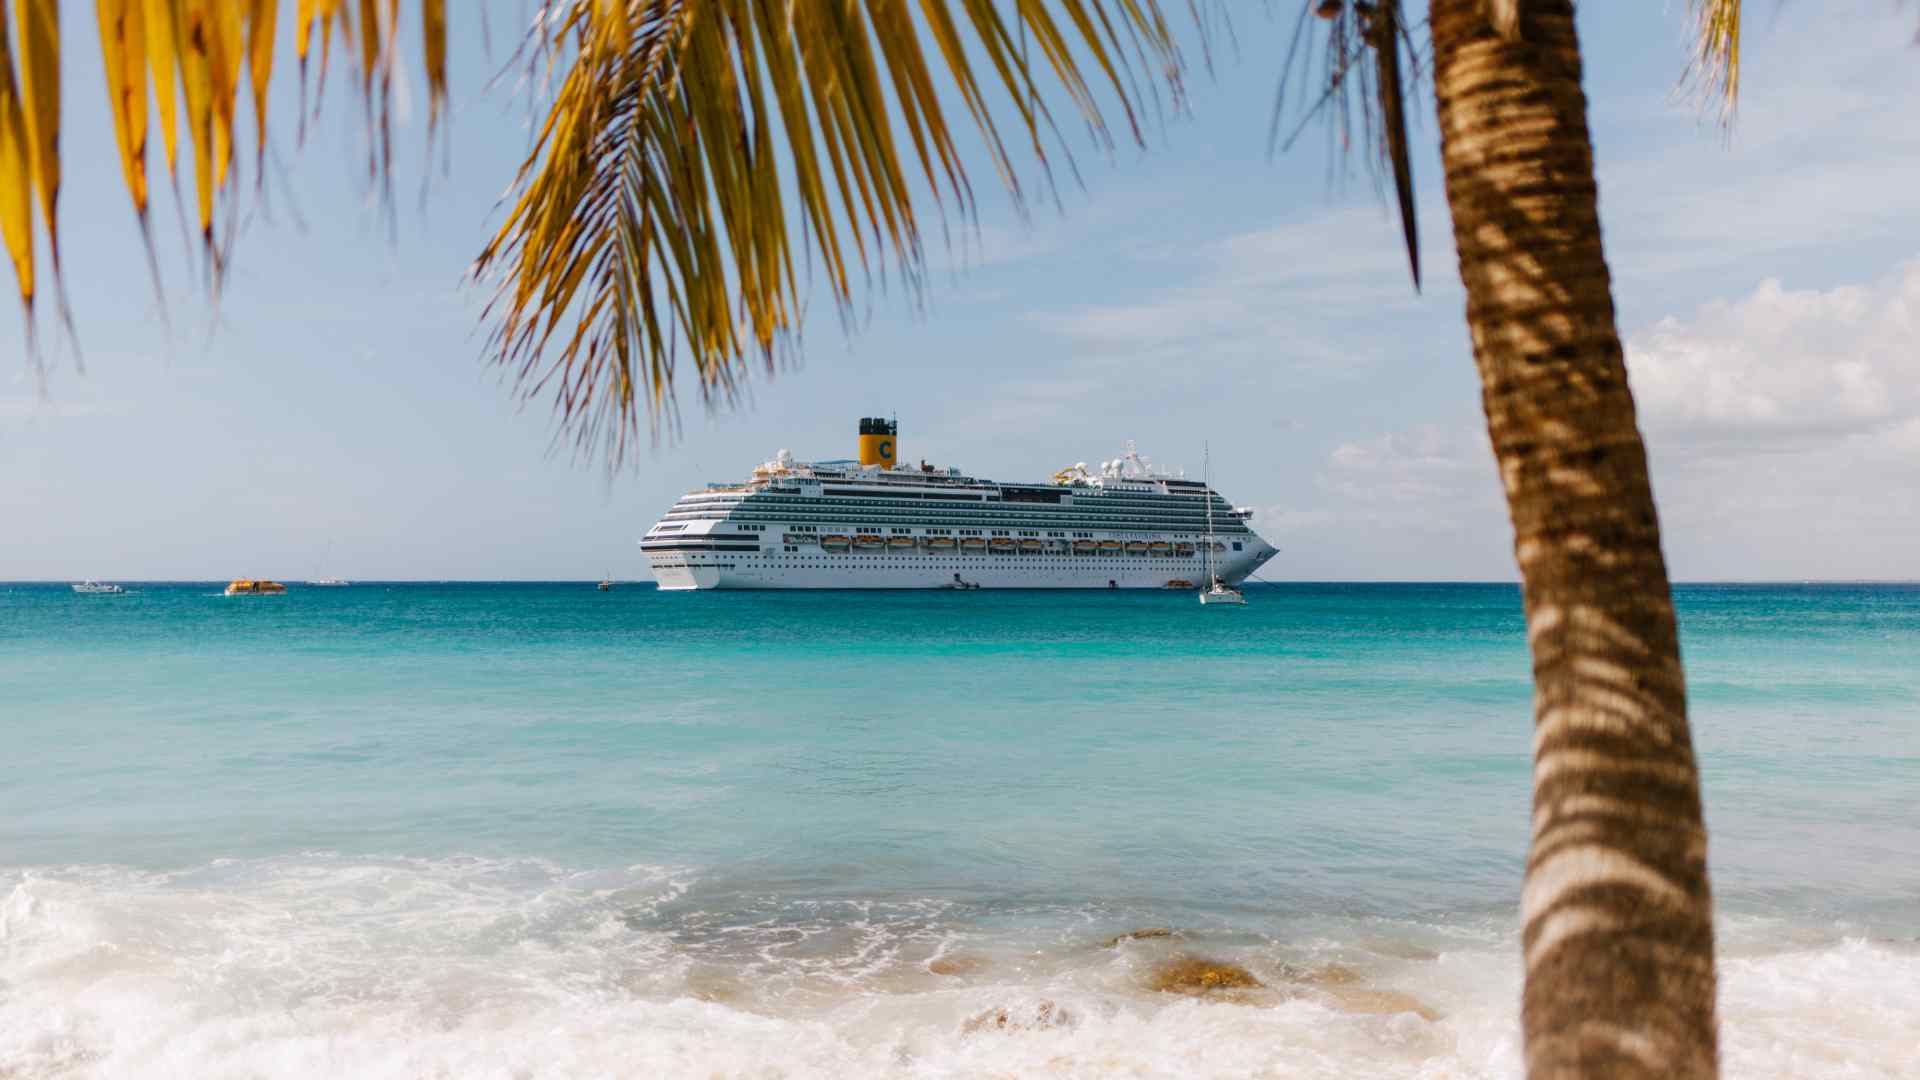 November Cruise Deals and Savings Tips